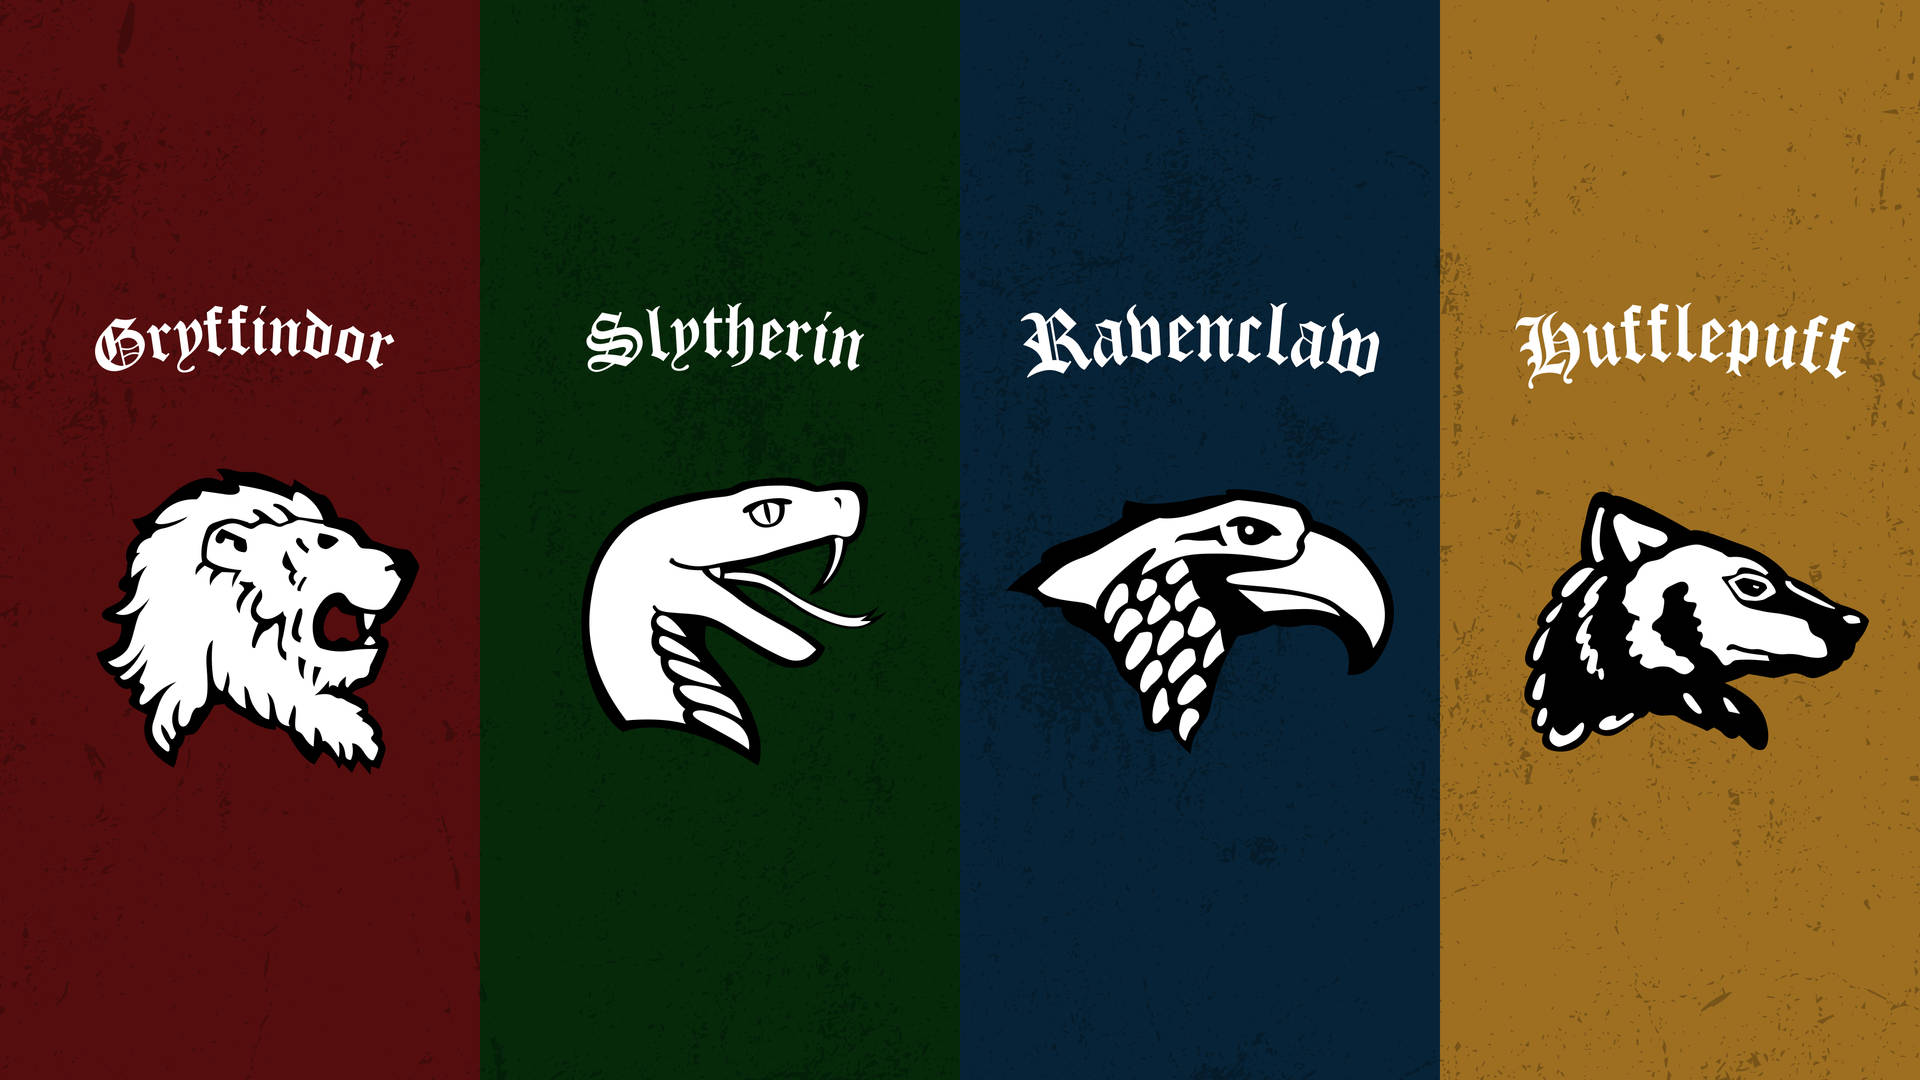 Four Houses Of Hogwarts Aesthetic Wallpaper